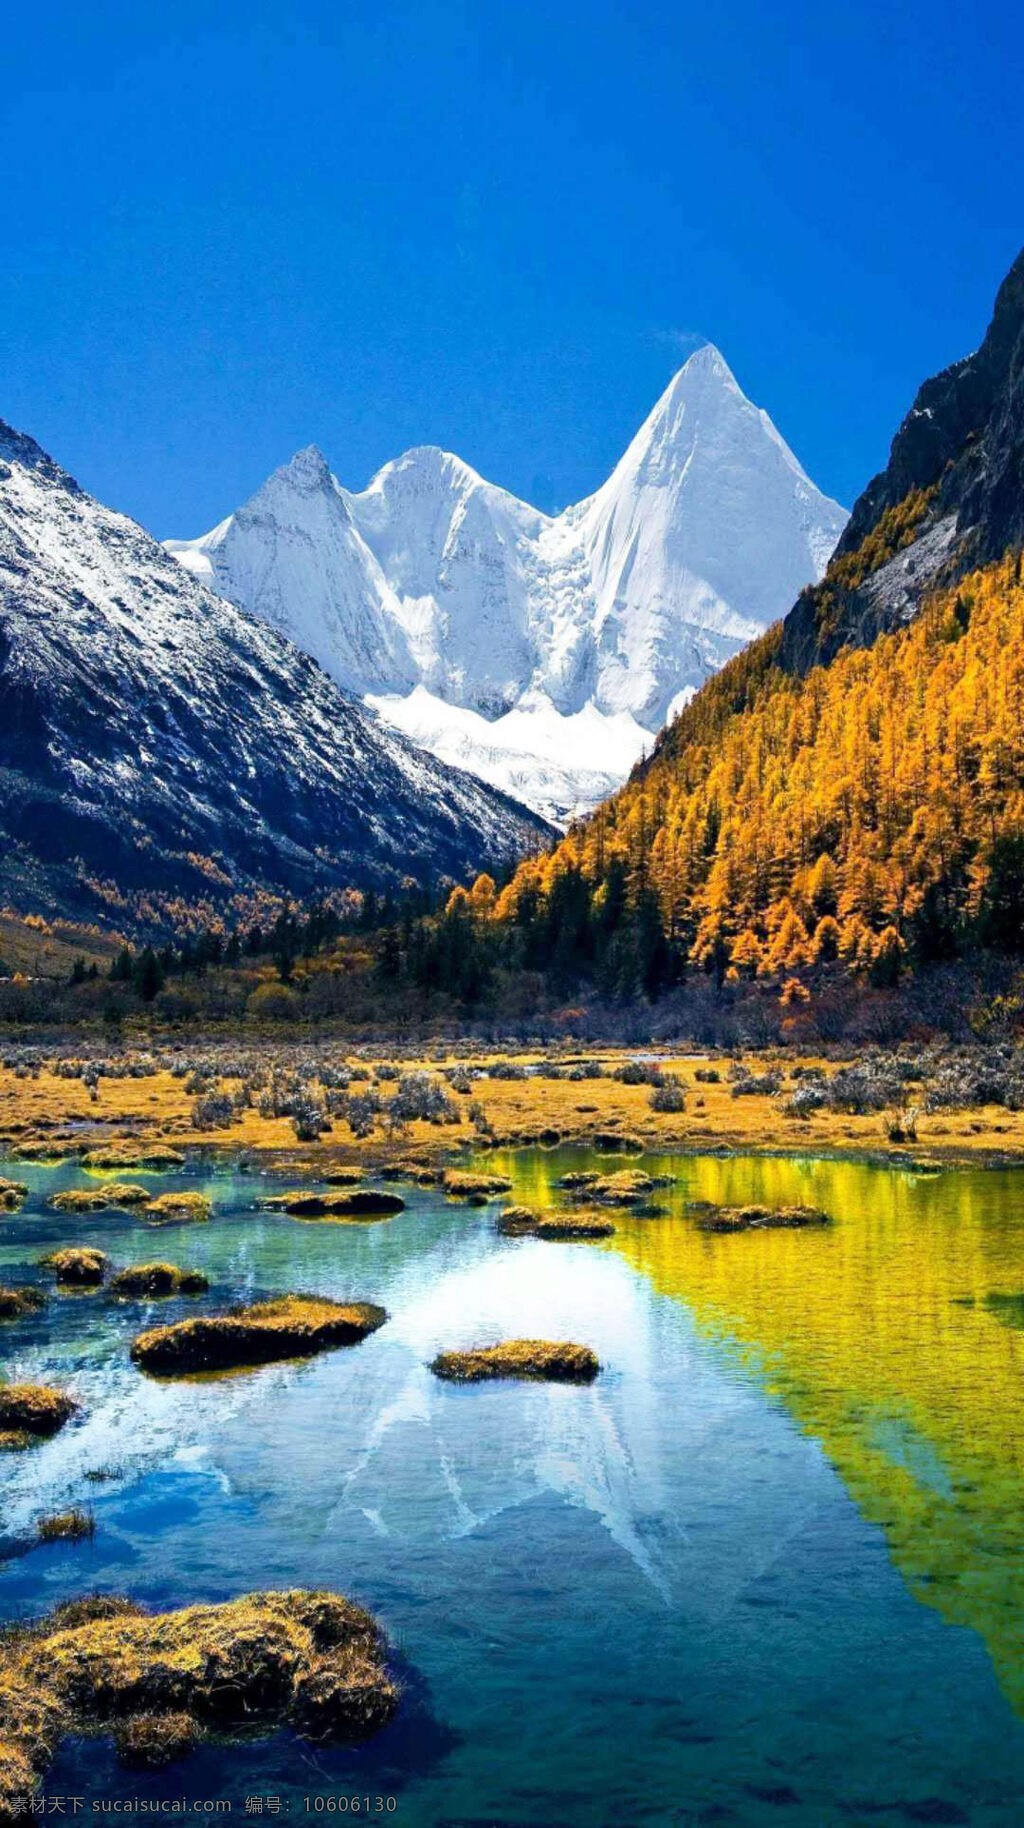 壮观 高原 雪山 风景 图 蔚蓝的天空 雪白的山峰 青山 松树 树林 碧蓝的湖水 自然景观 山水风景